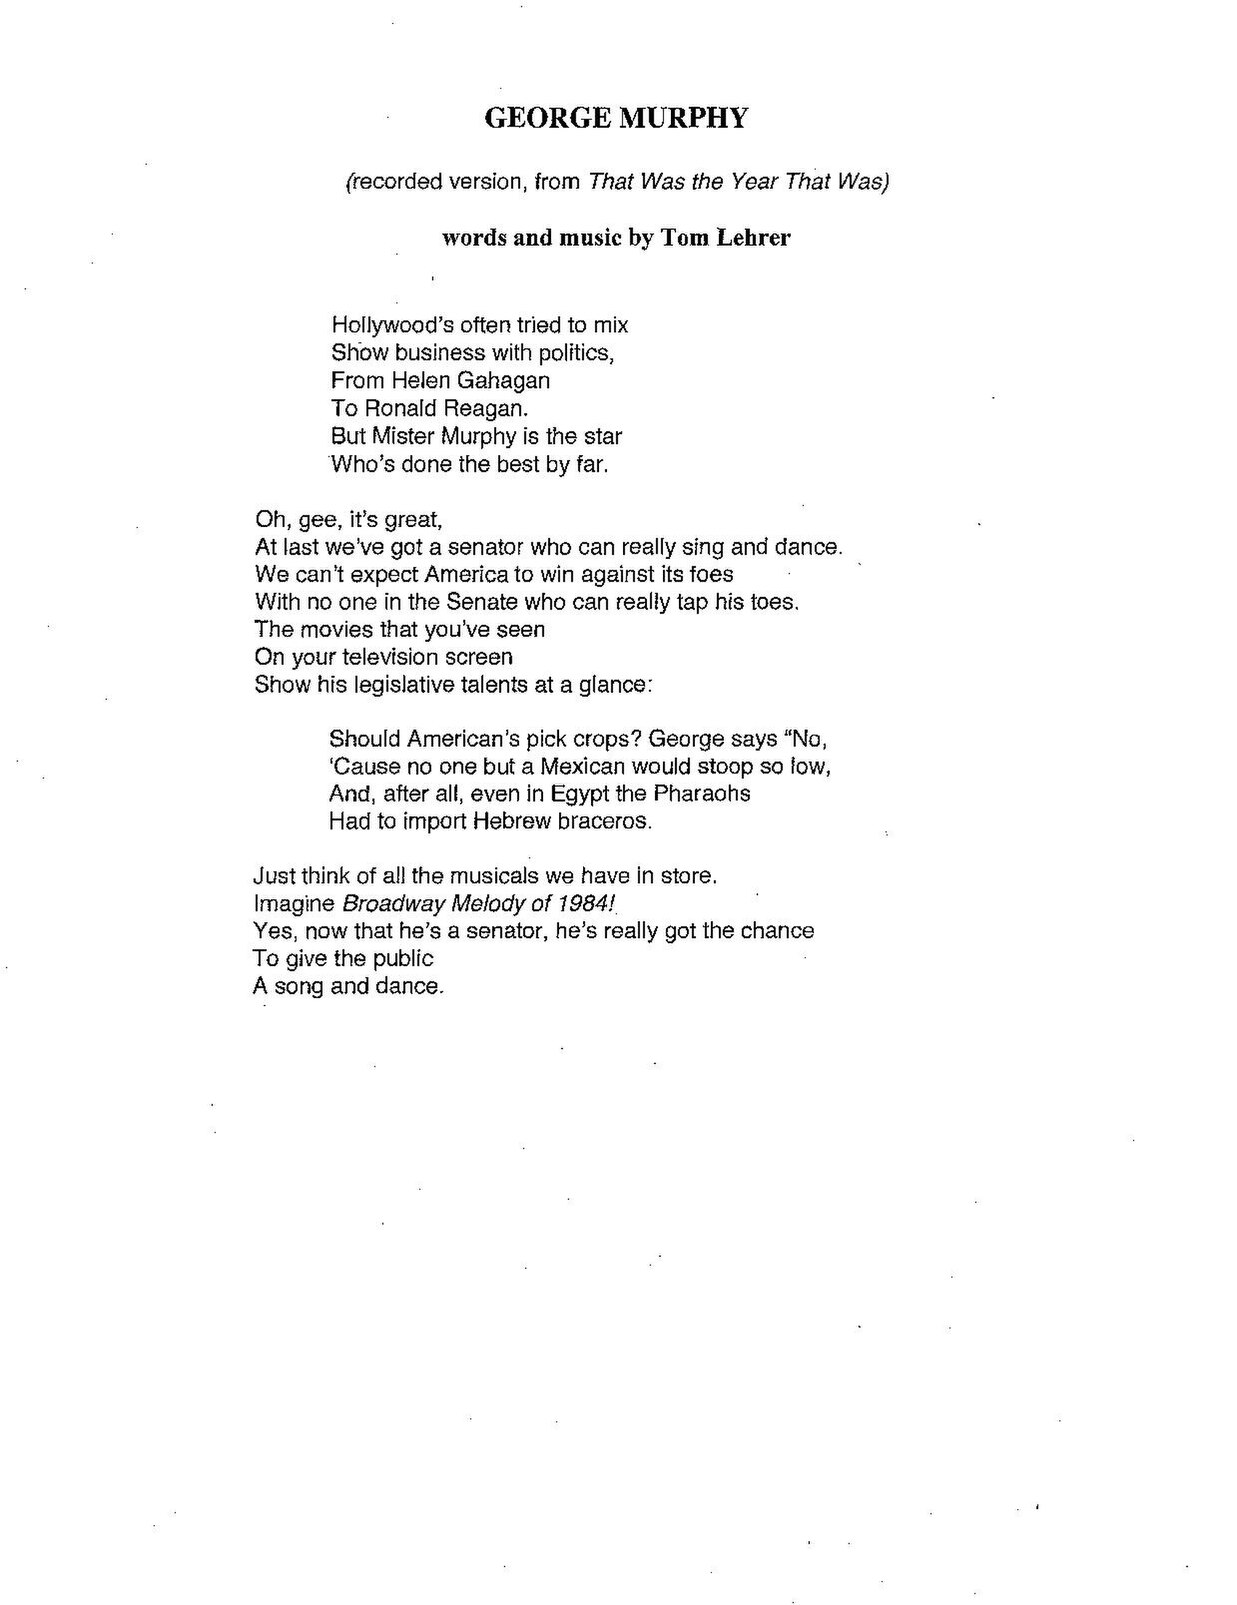 Who Says Lyrics, PDF, Recorded Music